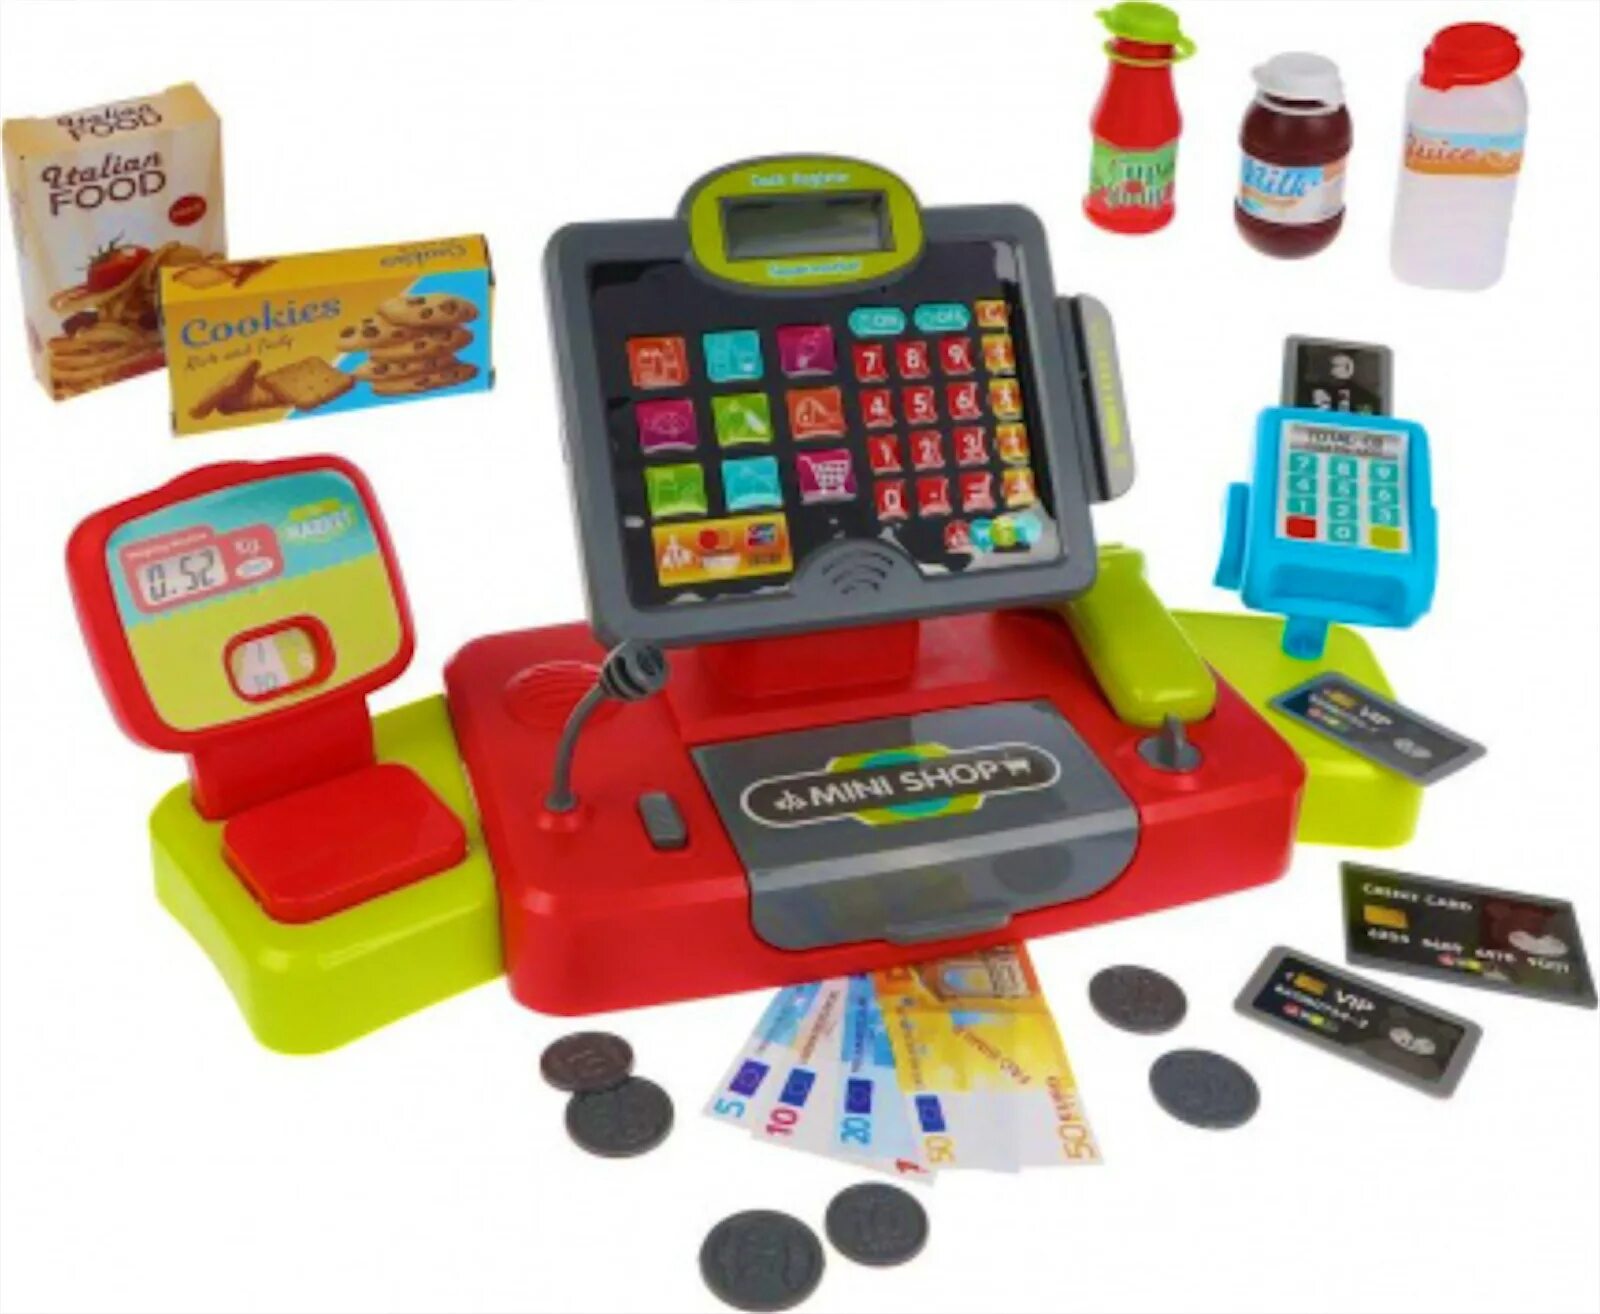 Детский набор магазин. Игровой набор касса. Игровой набор касса с продуктами. Игра магазин игрушек. Детские электронные кассы.